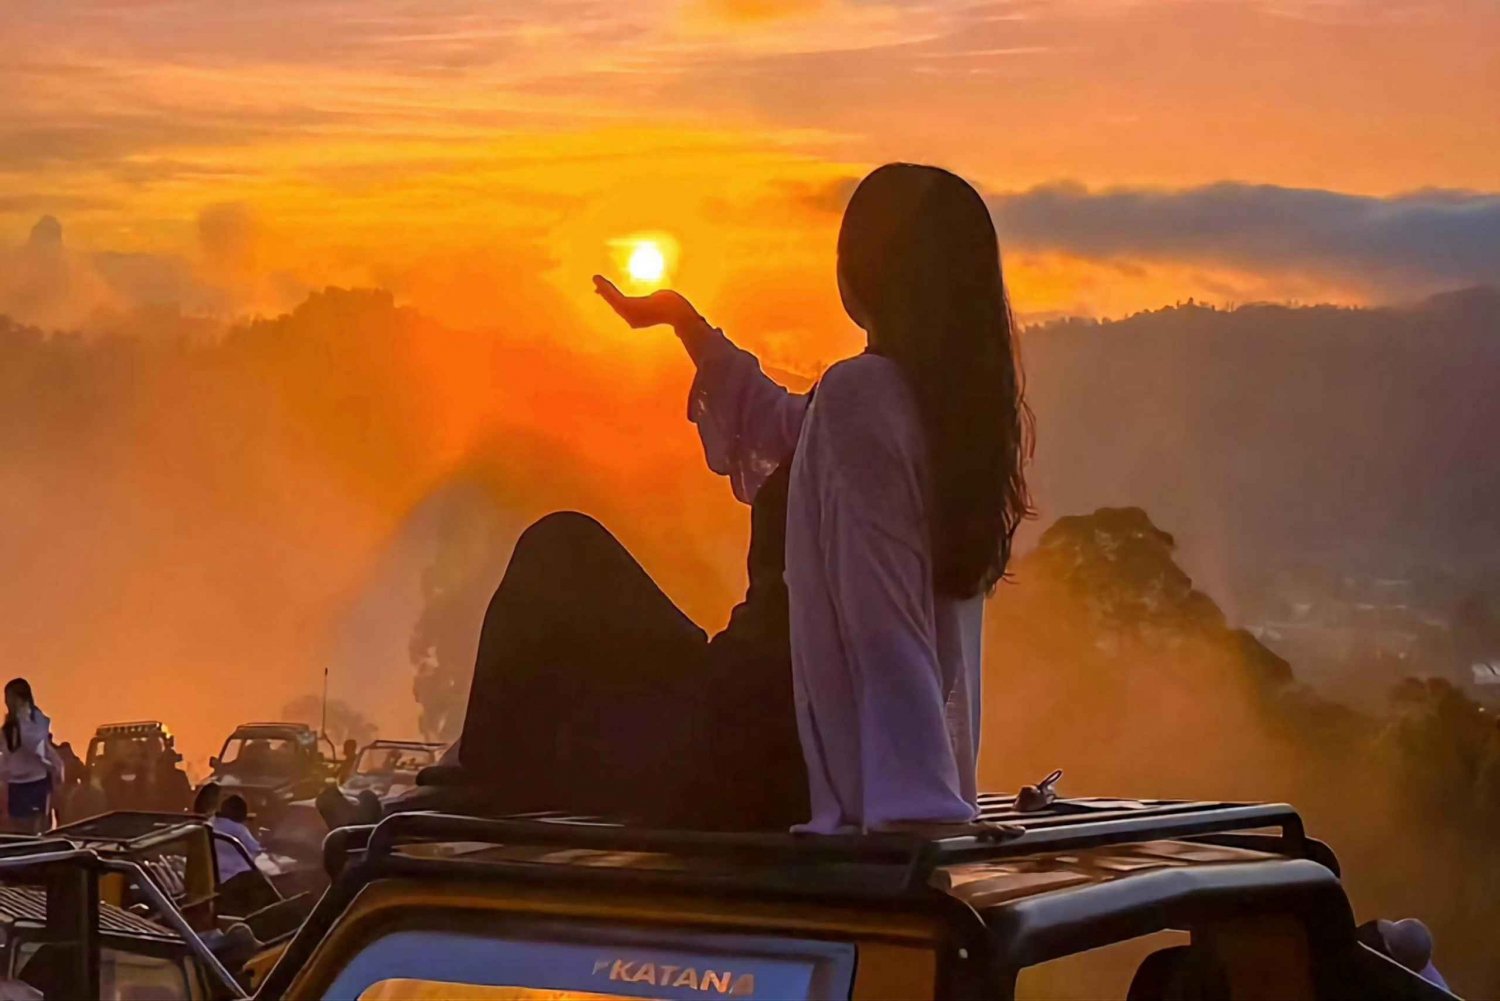 Bali All inclusive : Sunrise Jeep & Hot Springs Delight